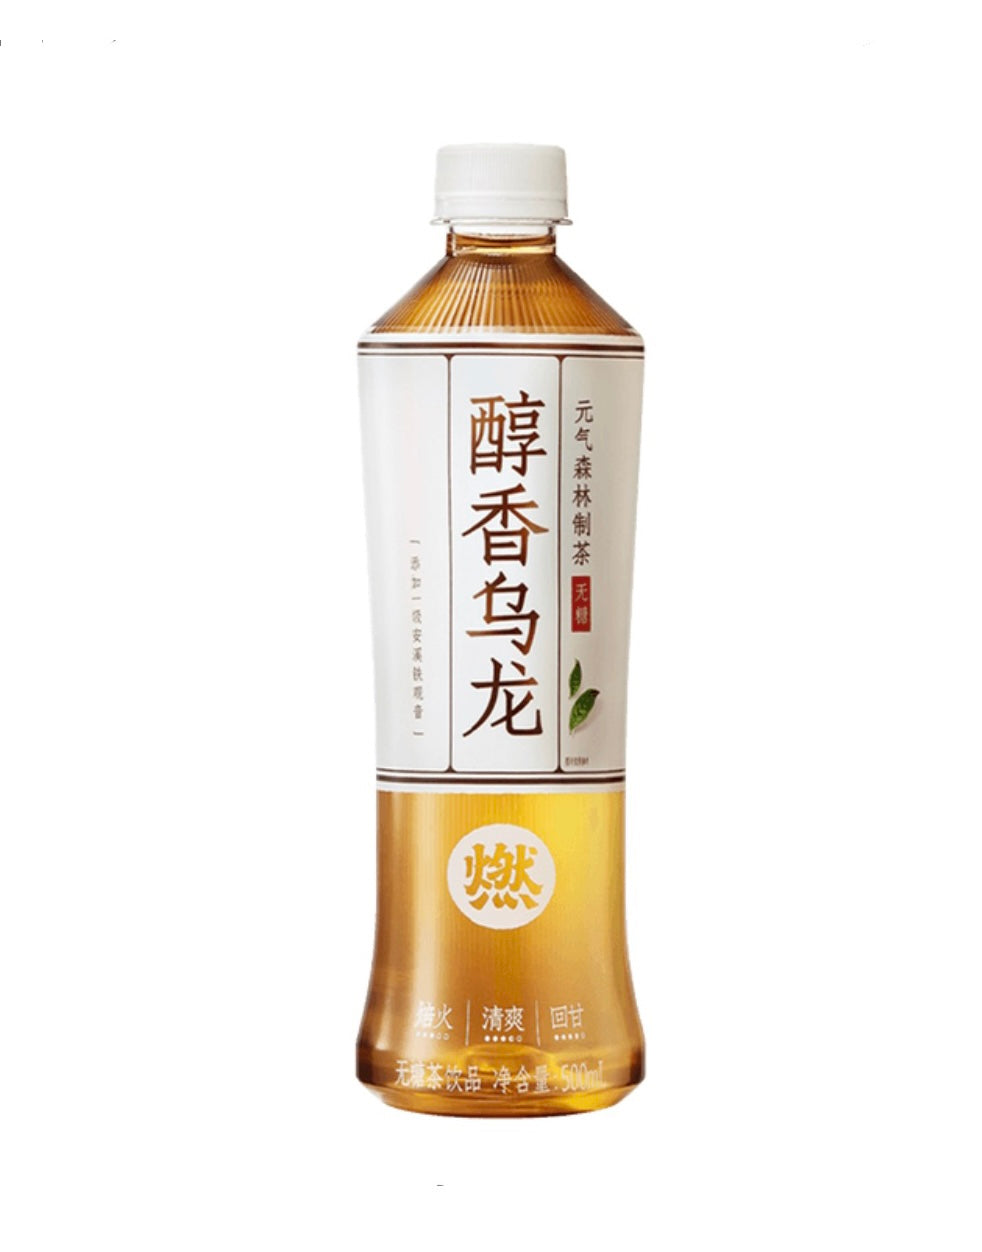 Genki Forest Oolong Tea (Original Flavour) 500ml *** <br> 元氣森林醇香無糖烏龍燃茶